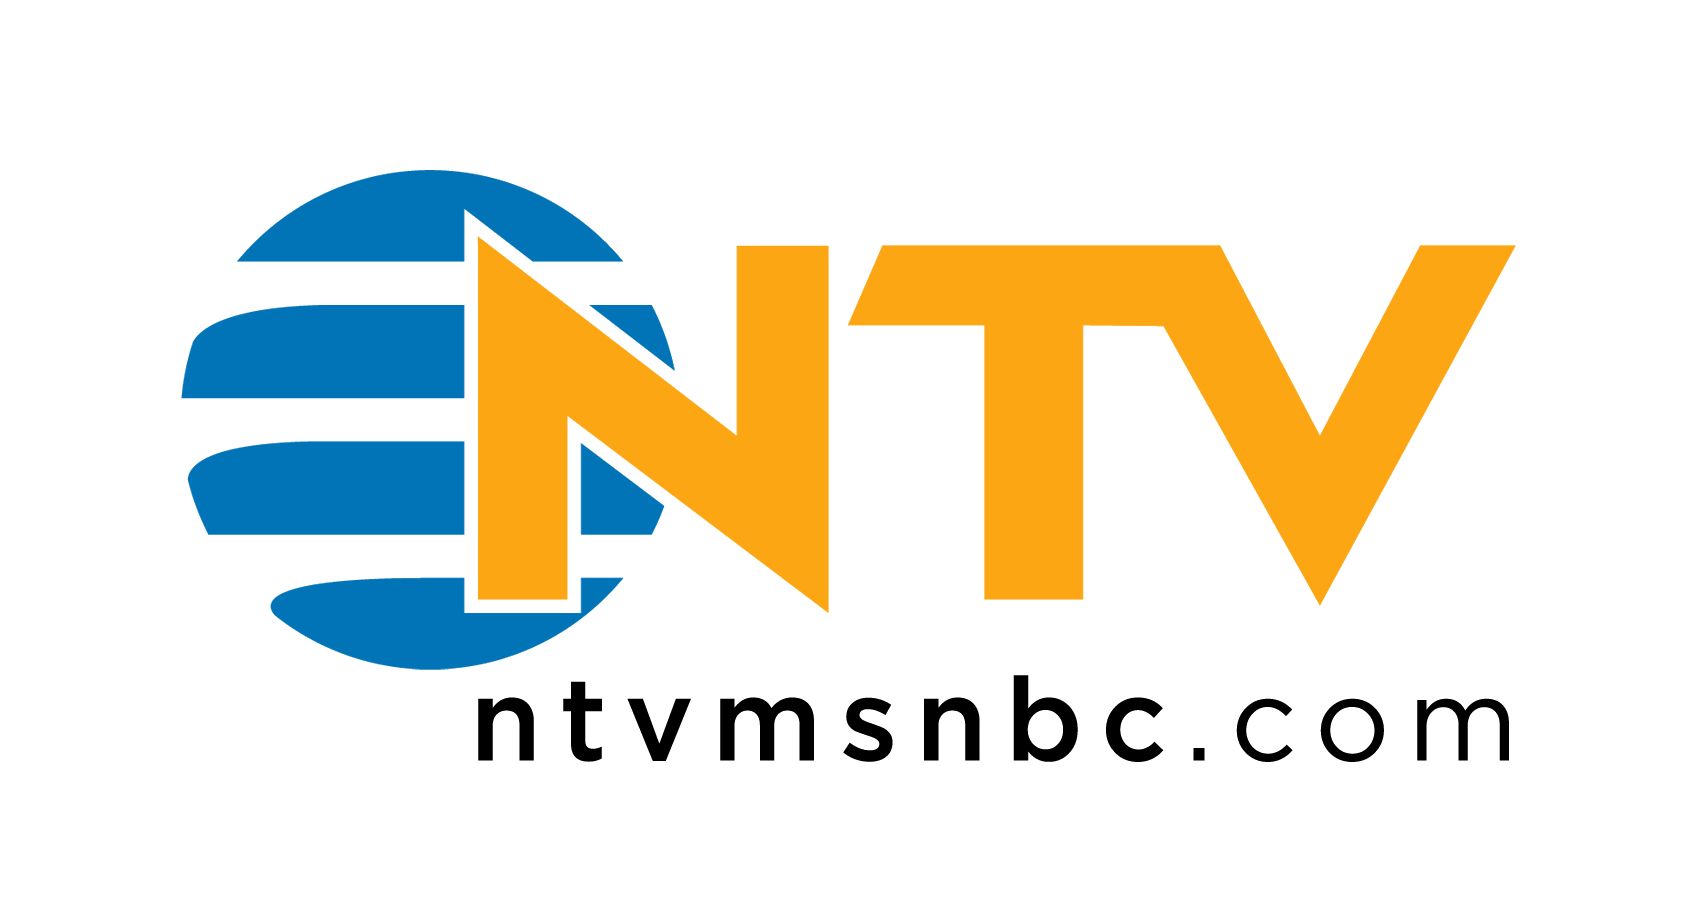 NTVMSNBC.com Logo photo - 1